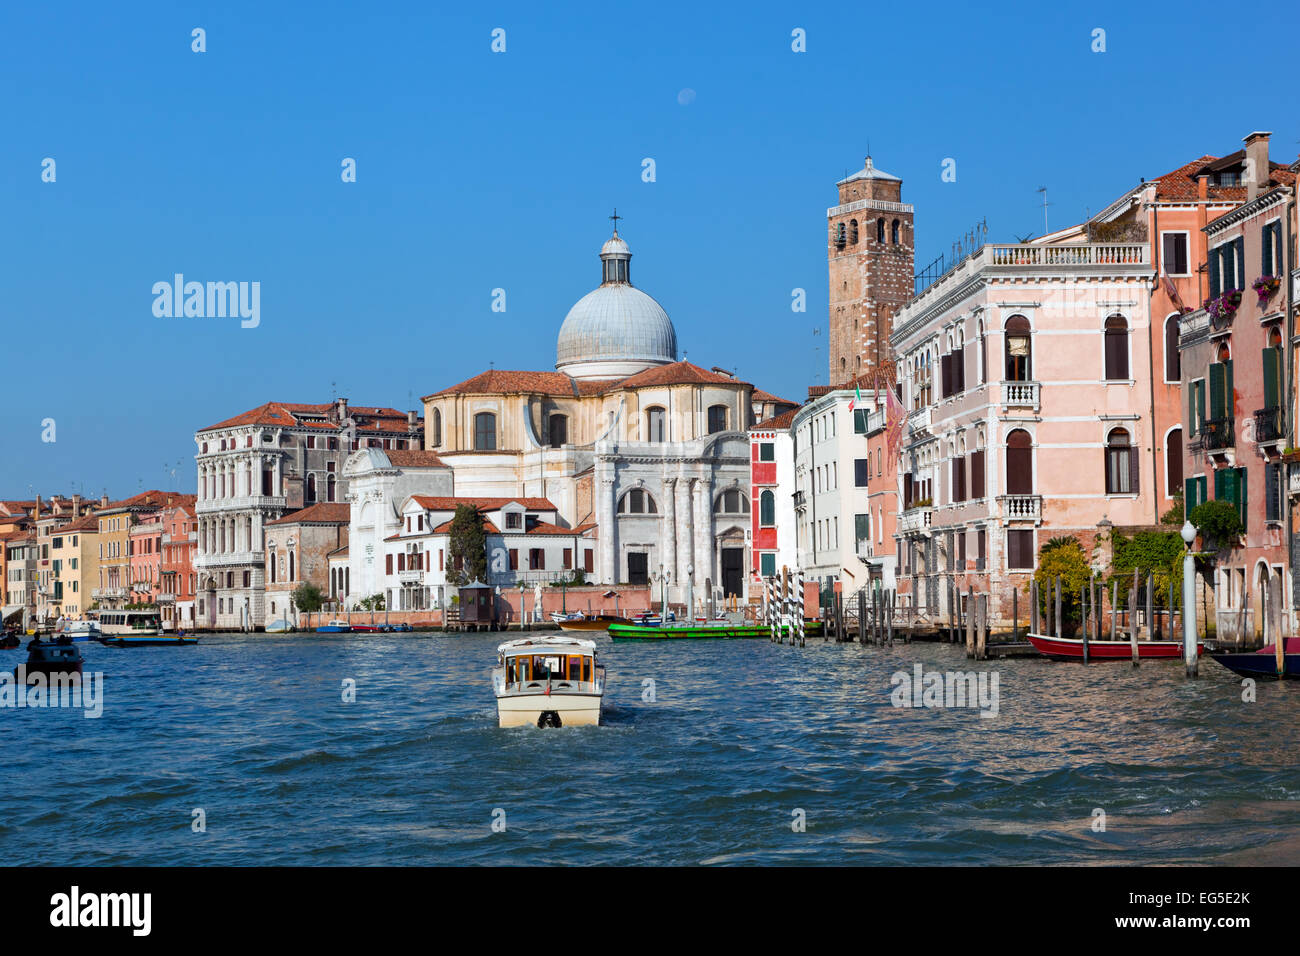 Venise Grand Canal, Canal Grande italienne au jour d'été ensoleillé. Ancienne architecture vénitienne, bateaux Banque D'Images